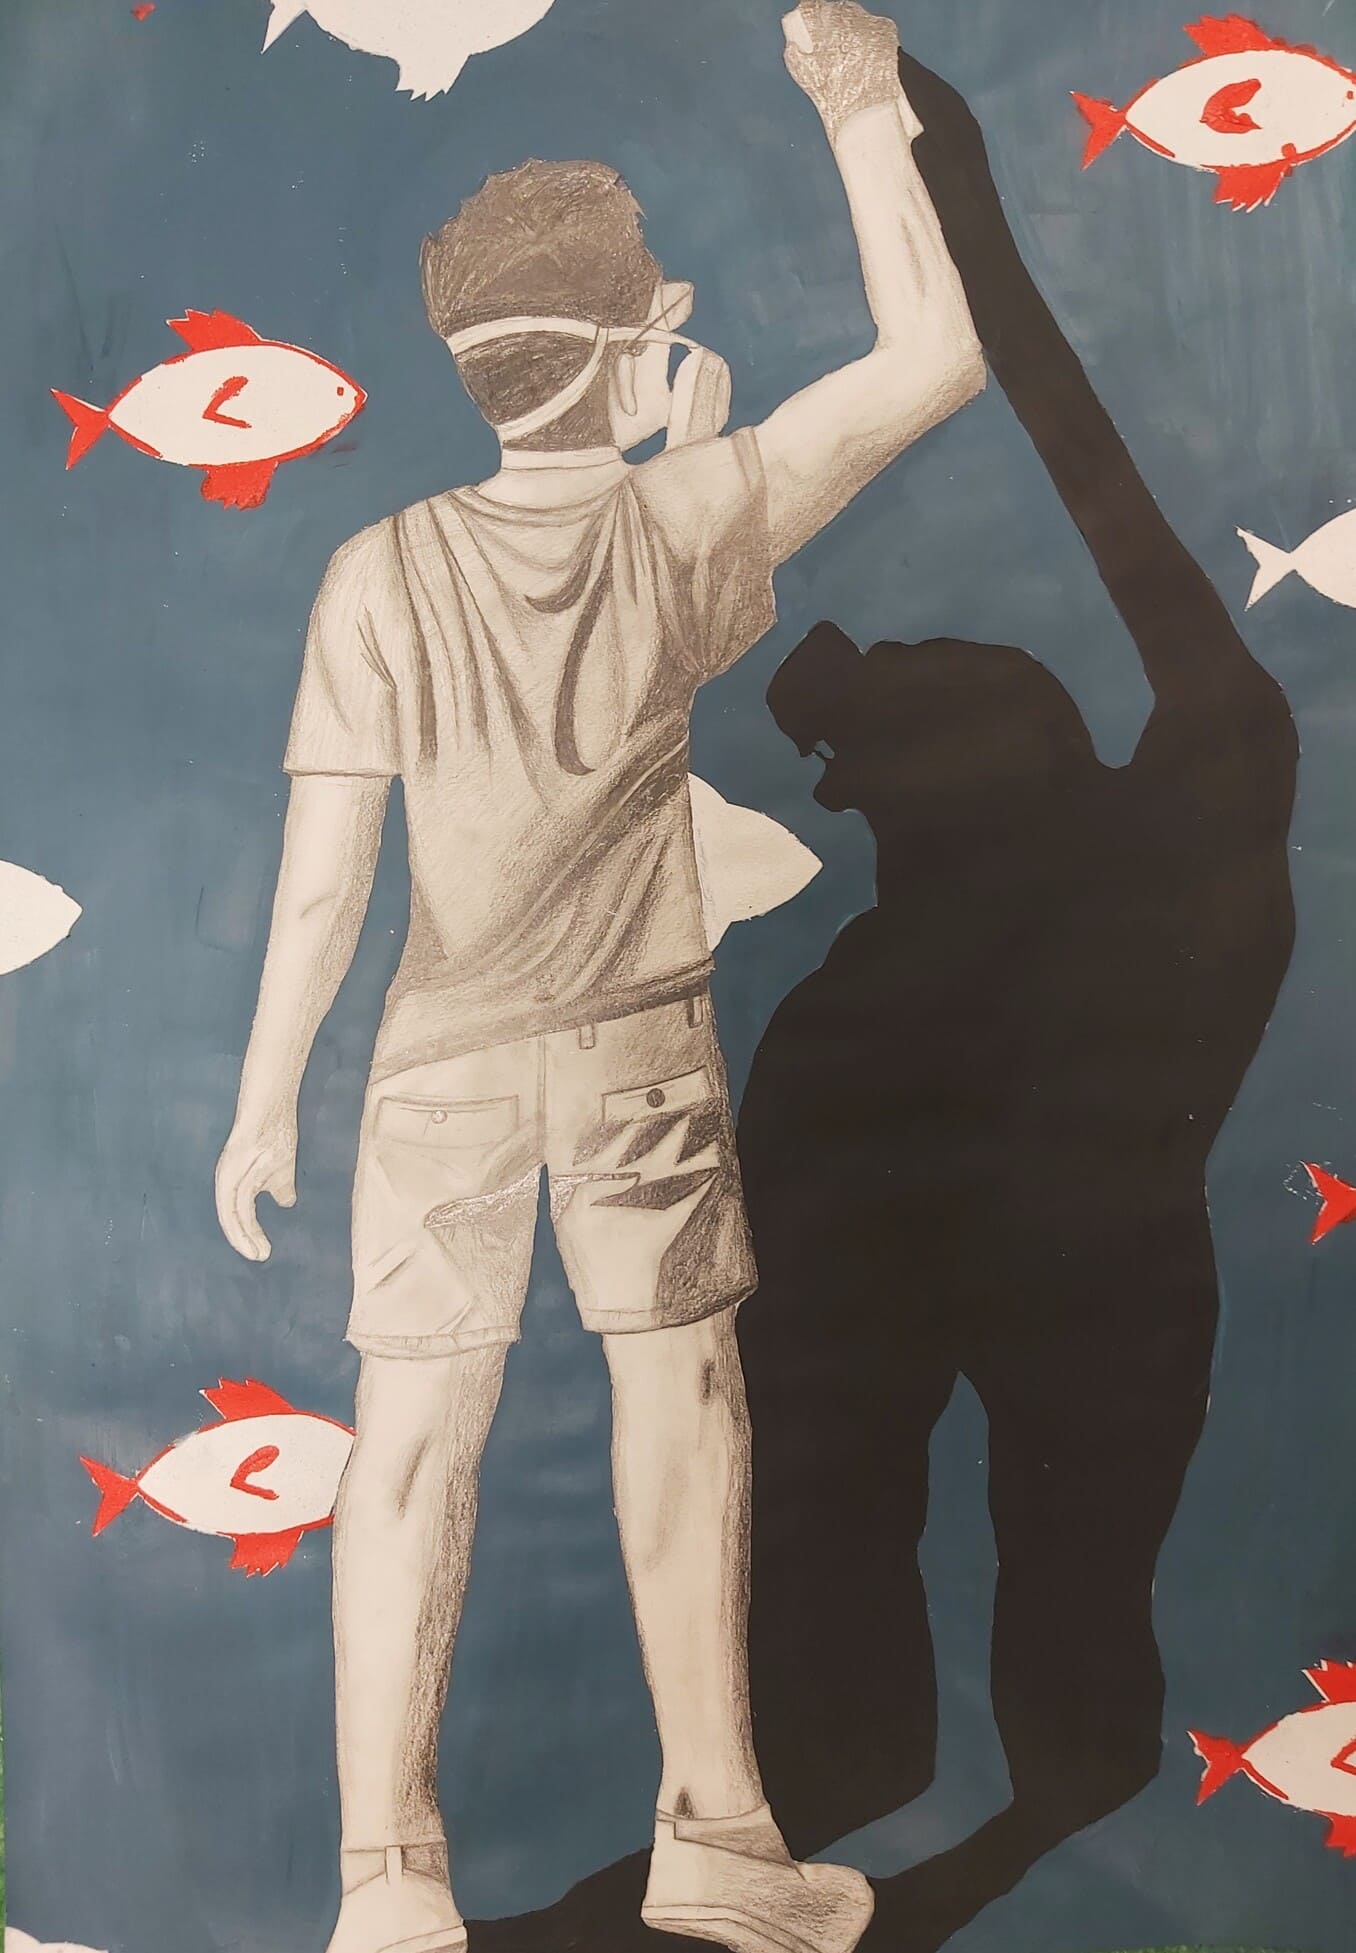 Tumehallil akrüülidega maalitud taustal on stencil tehnikas valged punaste sabade-uimeega kalad ja kõige ees suurelt grafiitjoonistusena stenclit tegeva poisi figuur